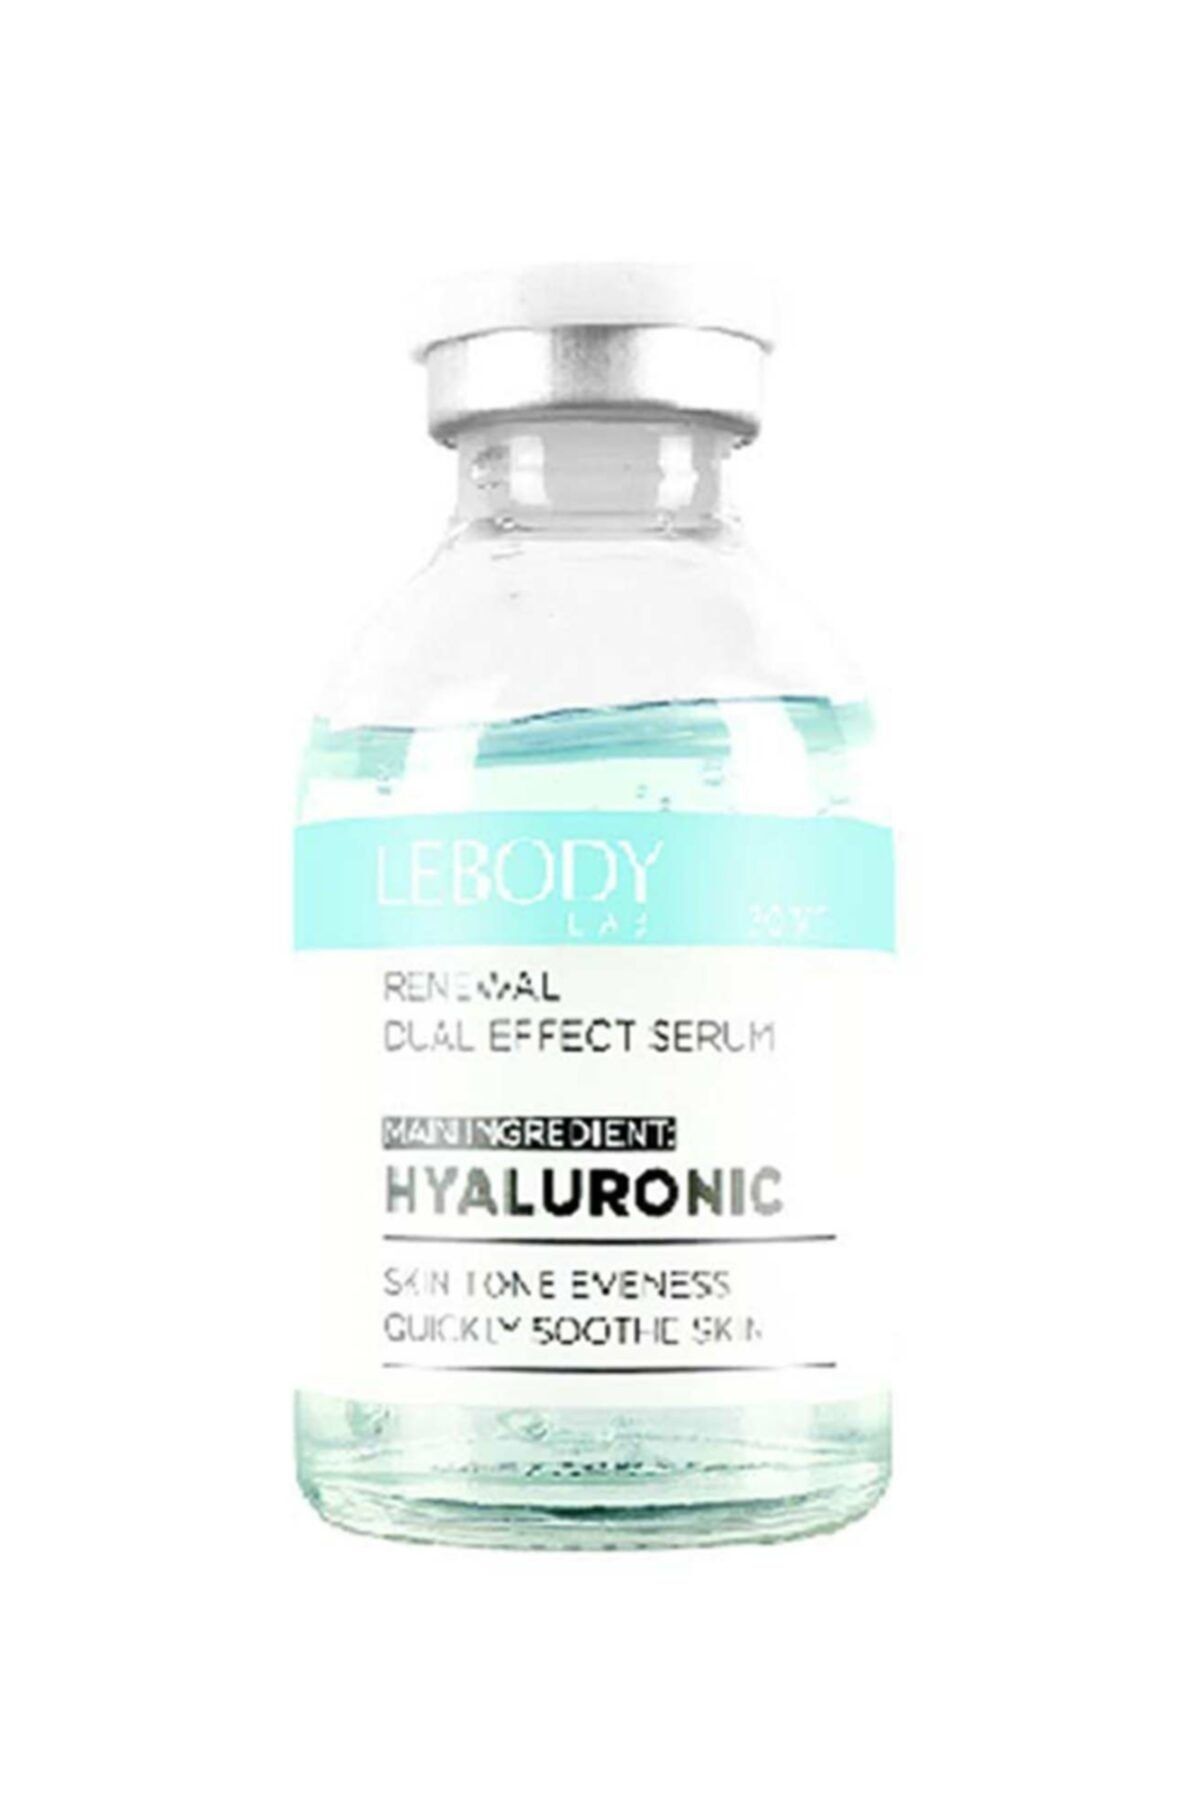 Lebody Hyalüronik Asit Canlandırıcı Cilt Bakım Serumu 30 Ml -